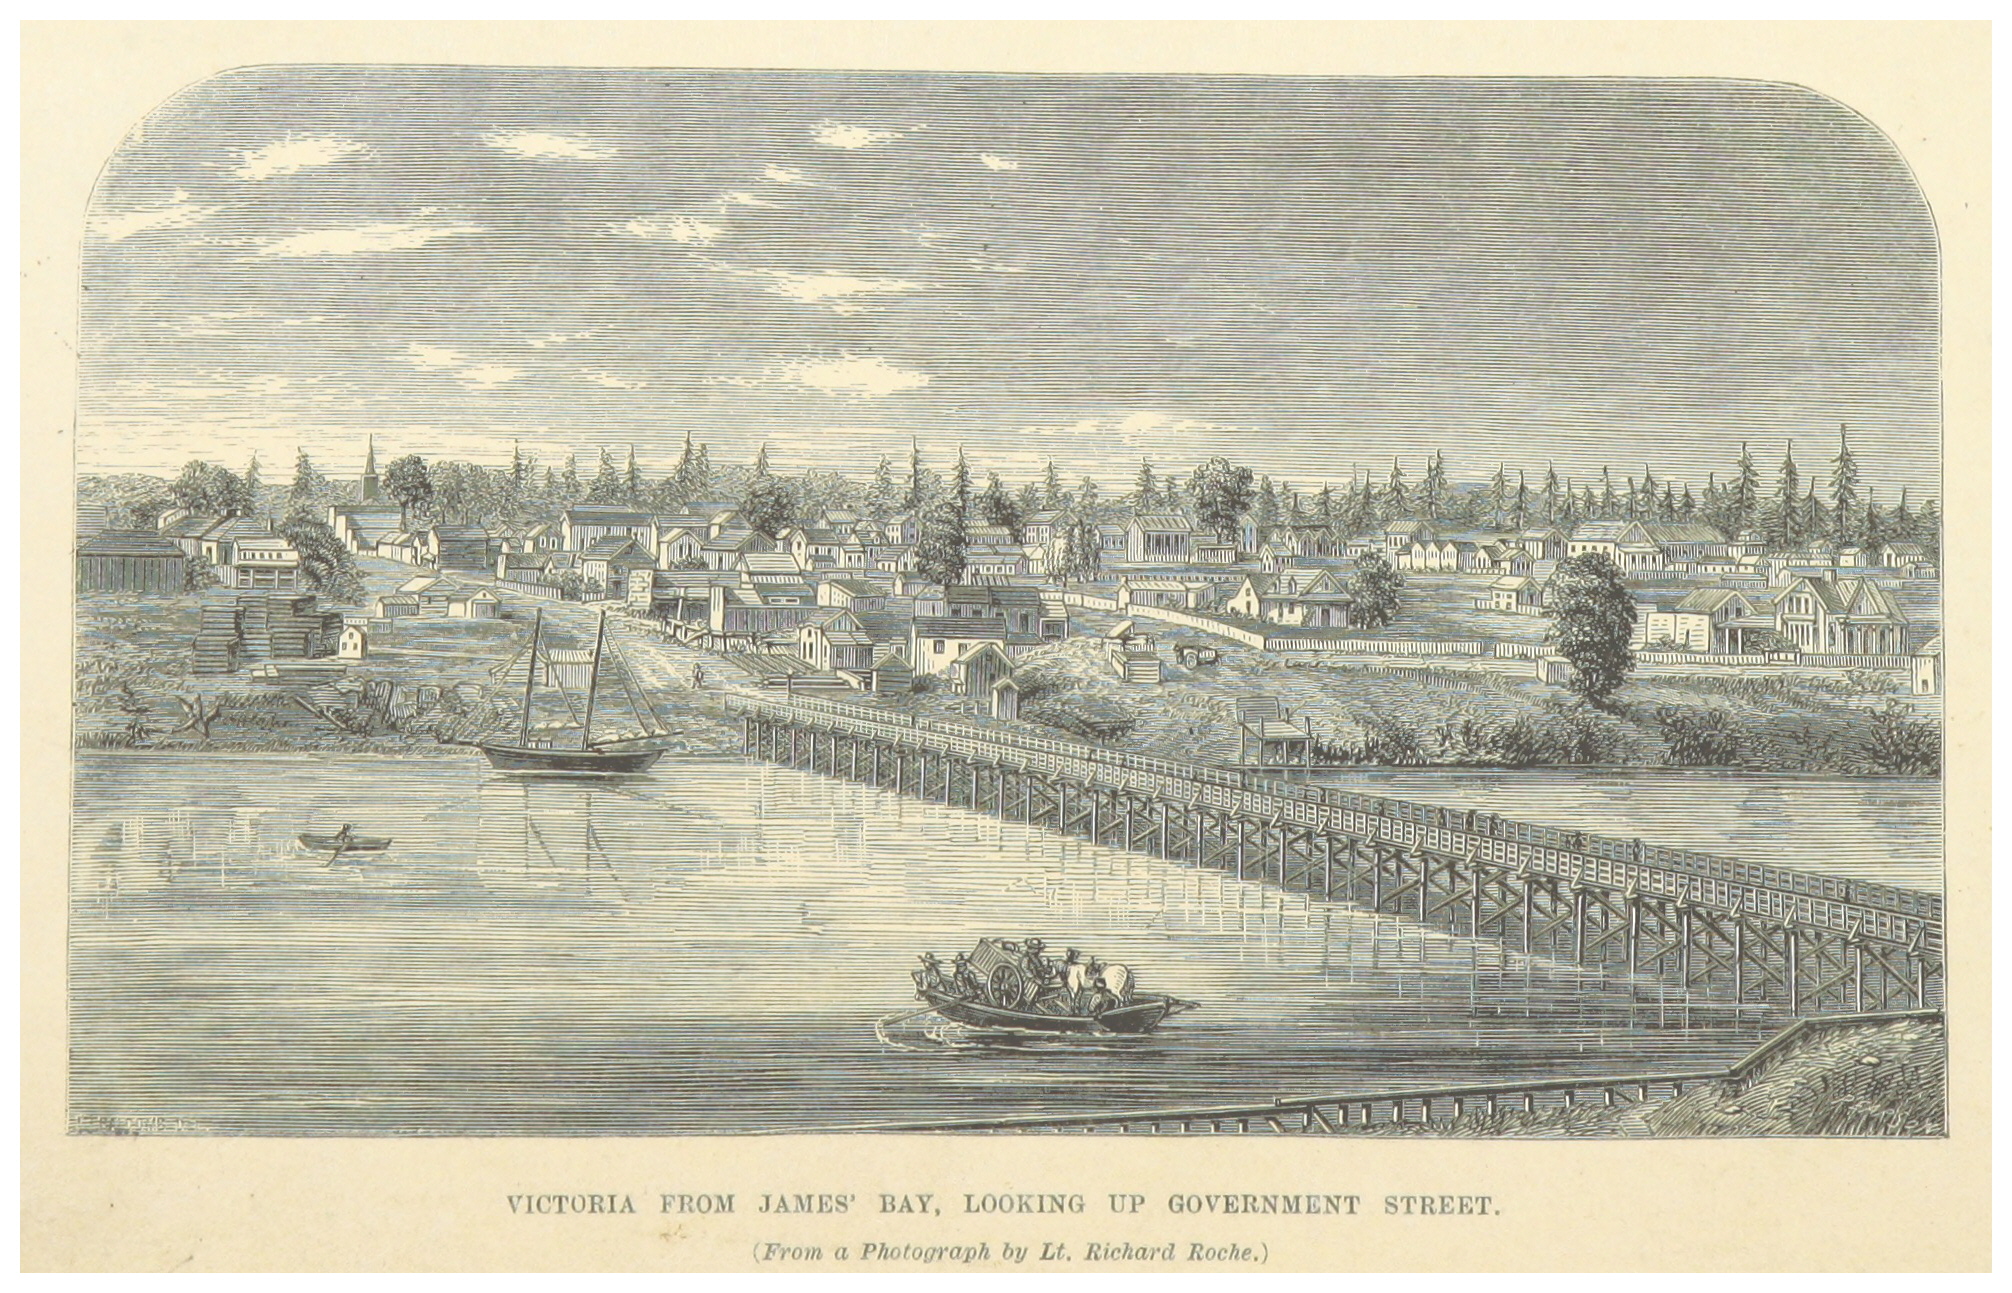 Victoria in 1862